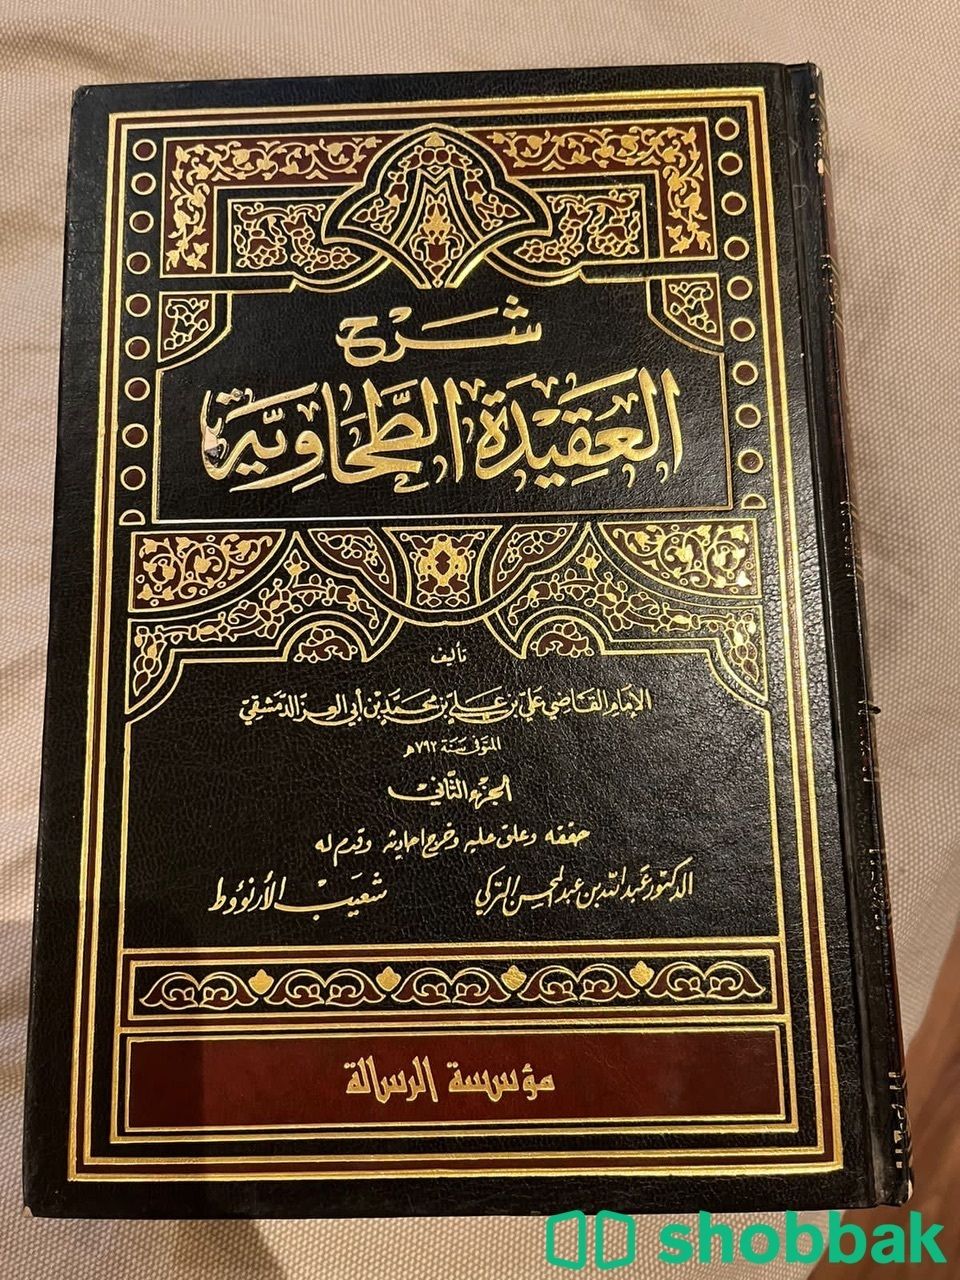 كتب دينية و اكاديمية  Shobbak Saudi Arabia